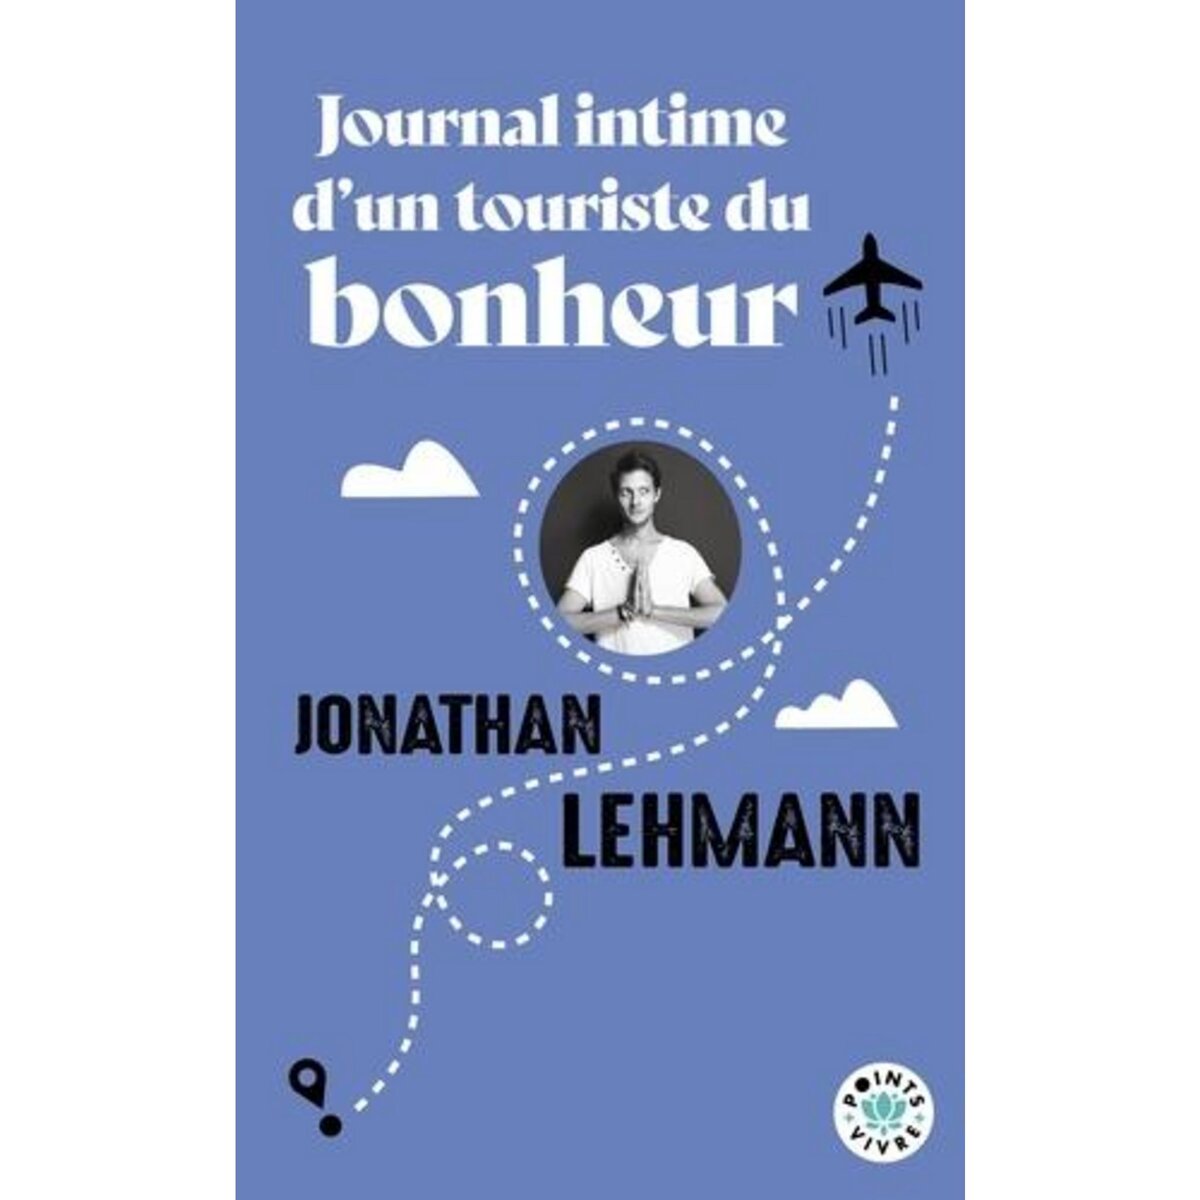  JOURNAL INTIME D'UN TOURISTE DU BONHEUR, Lehmann Jonathan